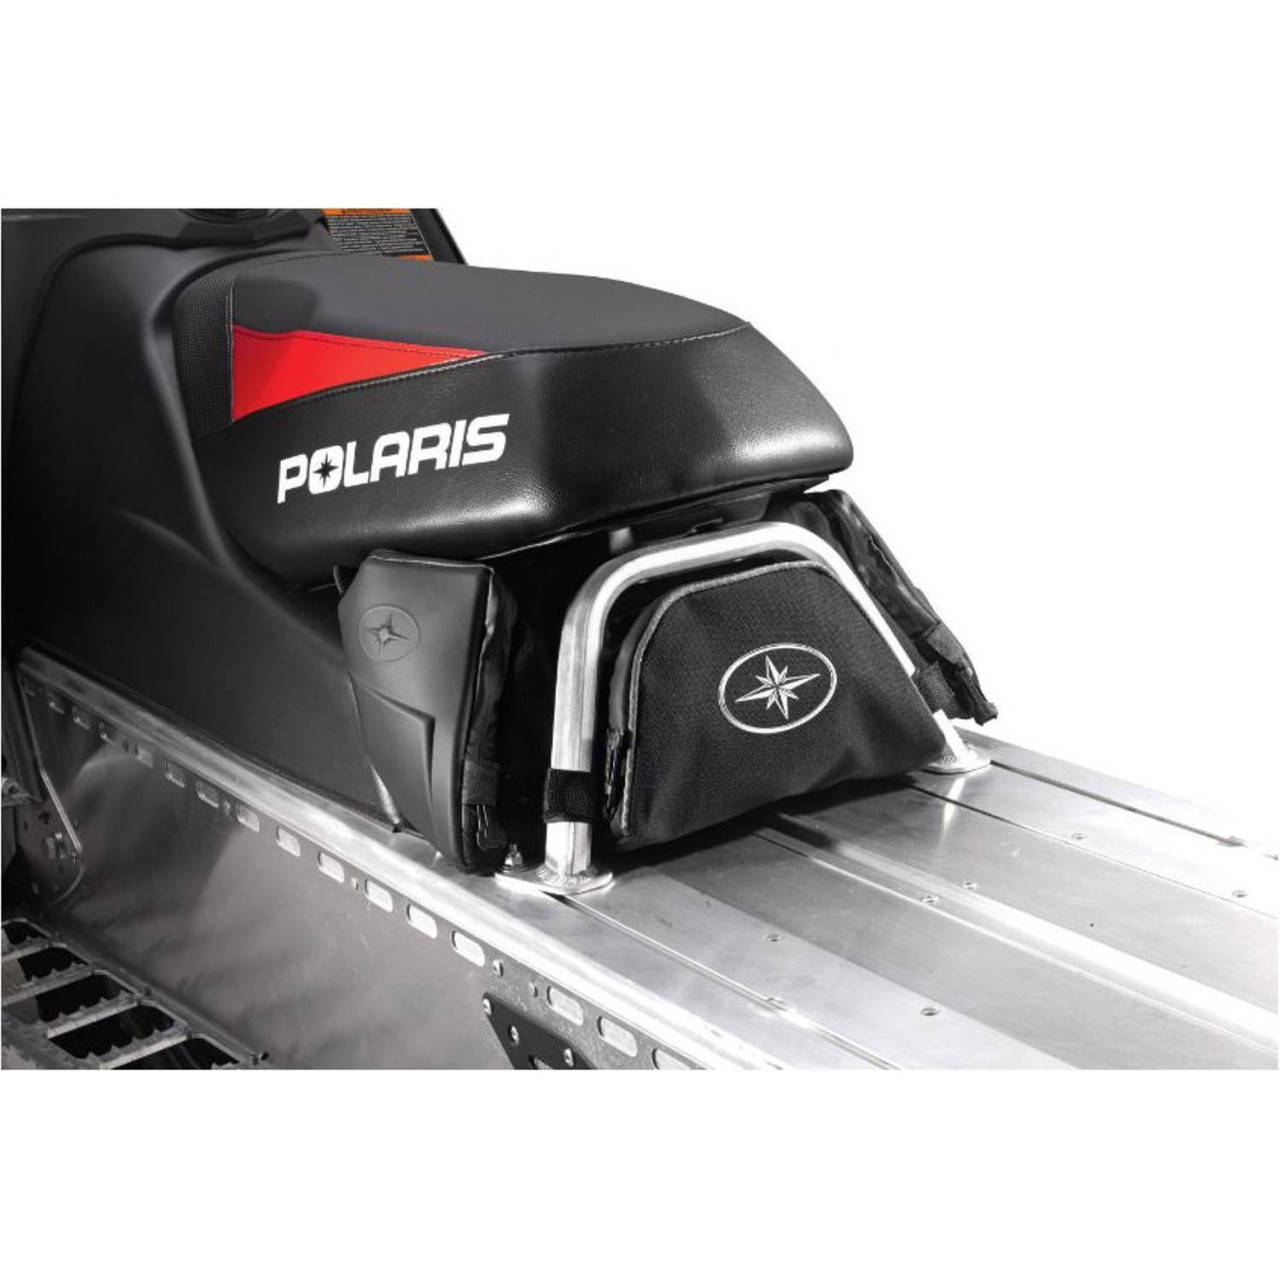 Polaris New OEM Water Resistant Snowmobile UnderSeat Bag Liner 2878733, 2879087